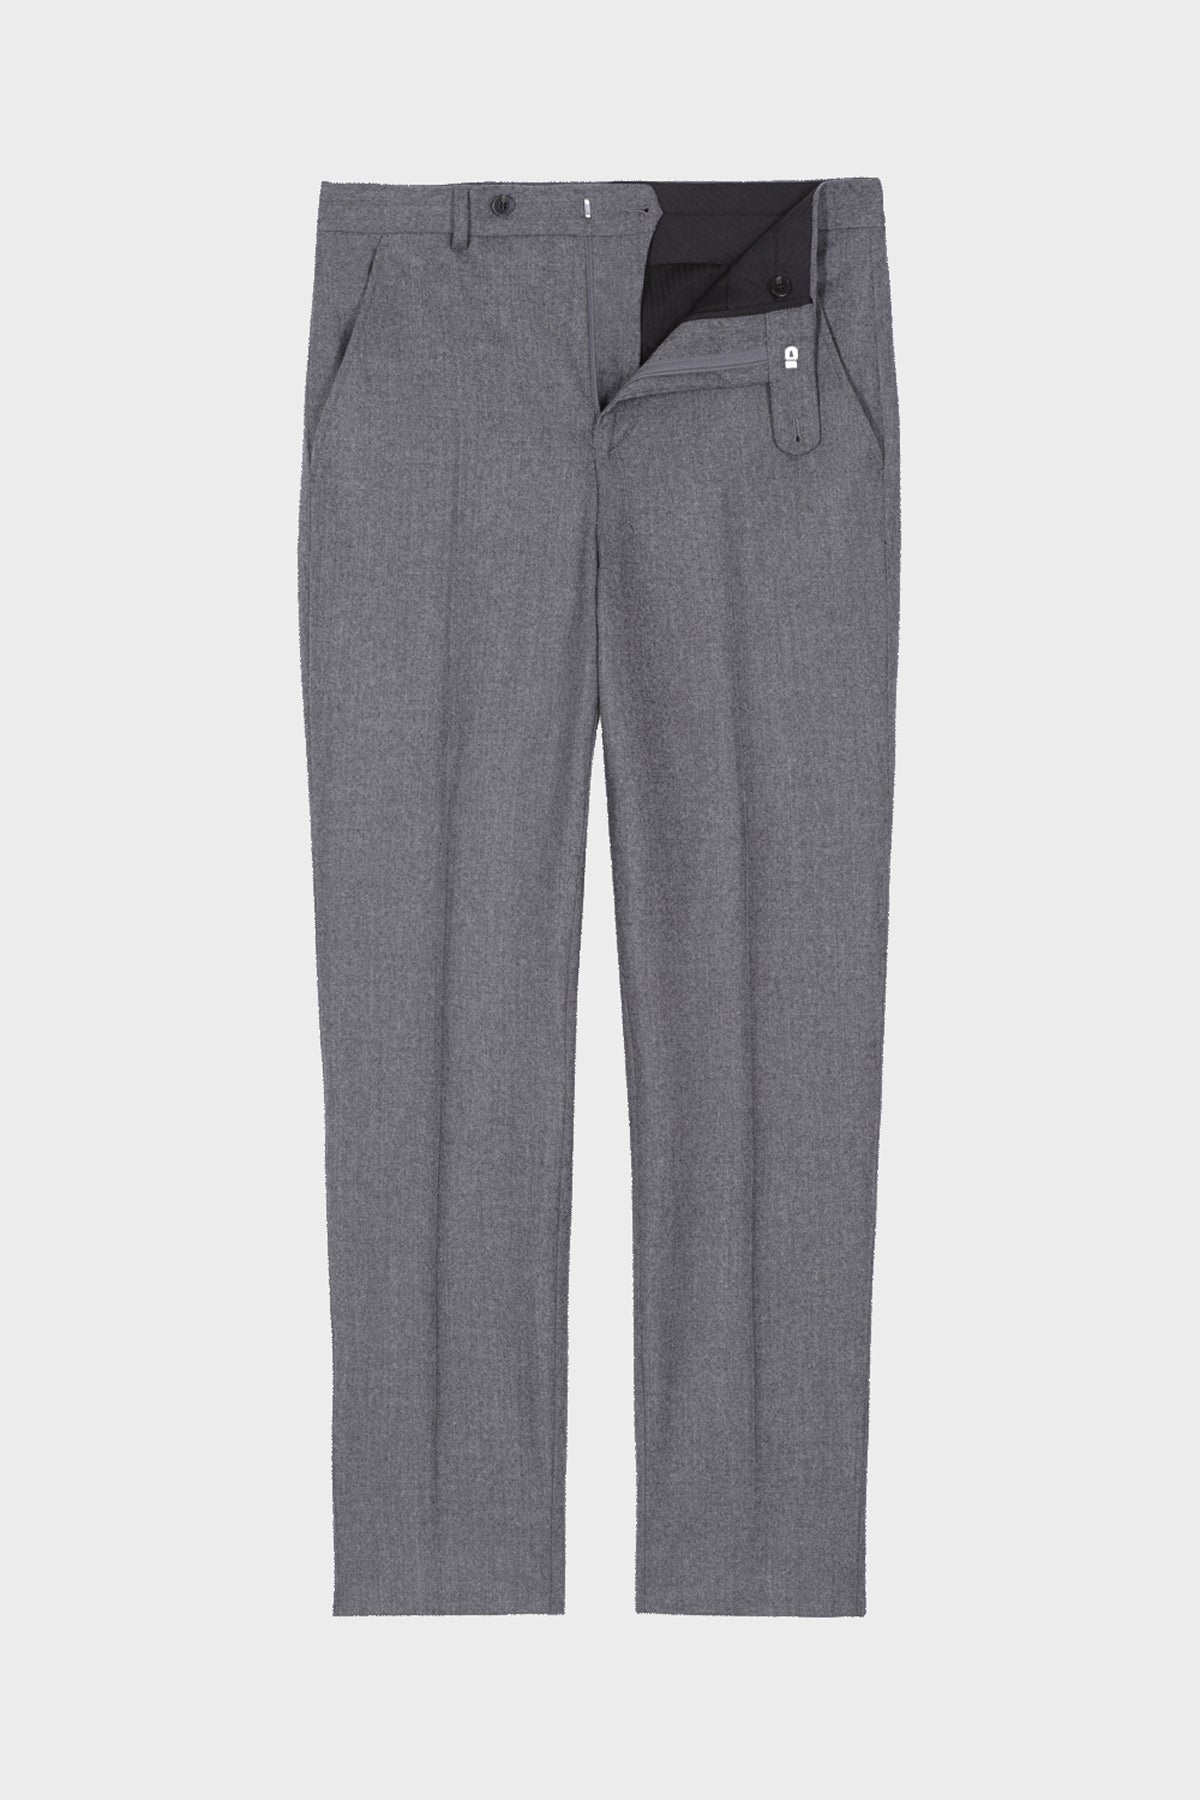 Pantalon taille haute en flanelle Nortom gris clair